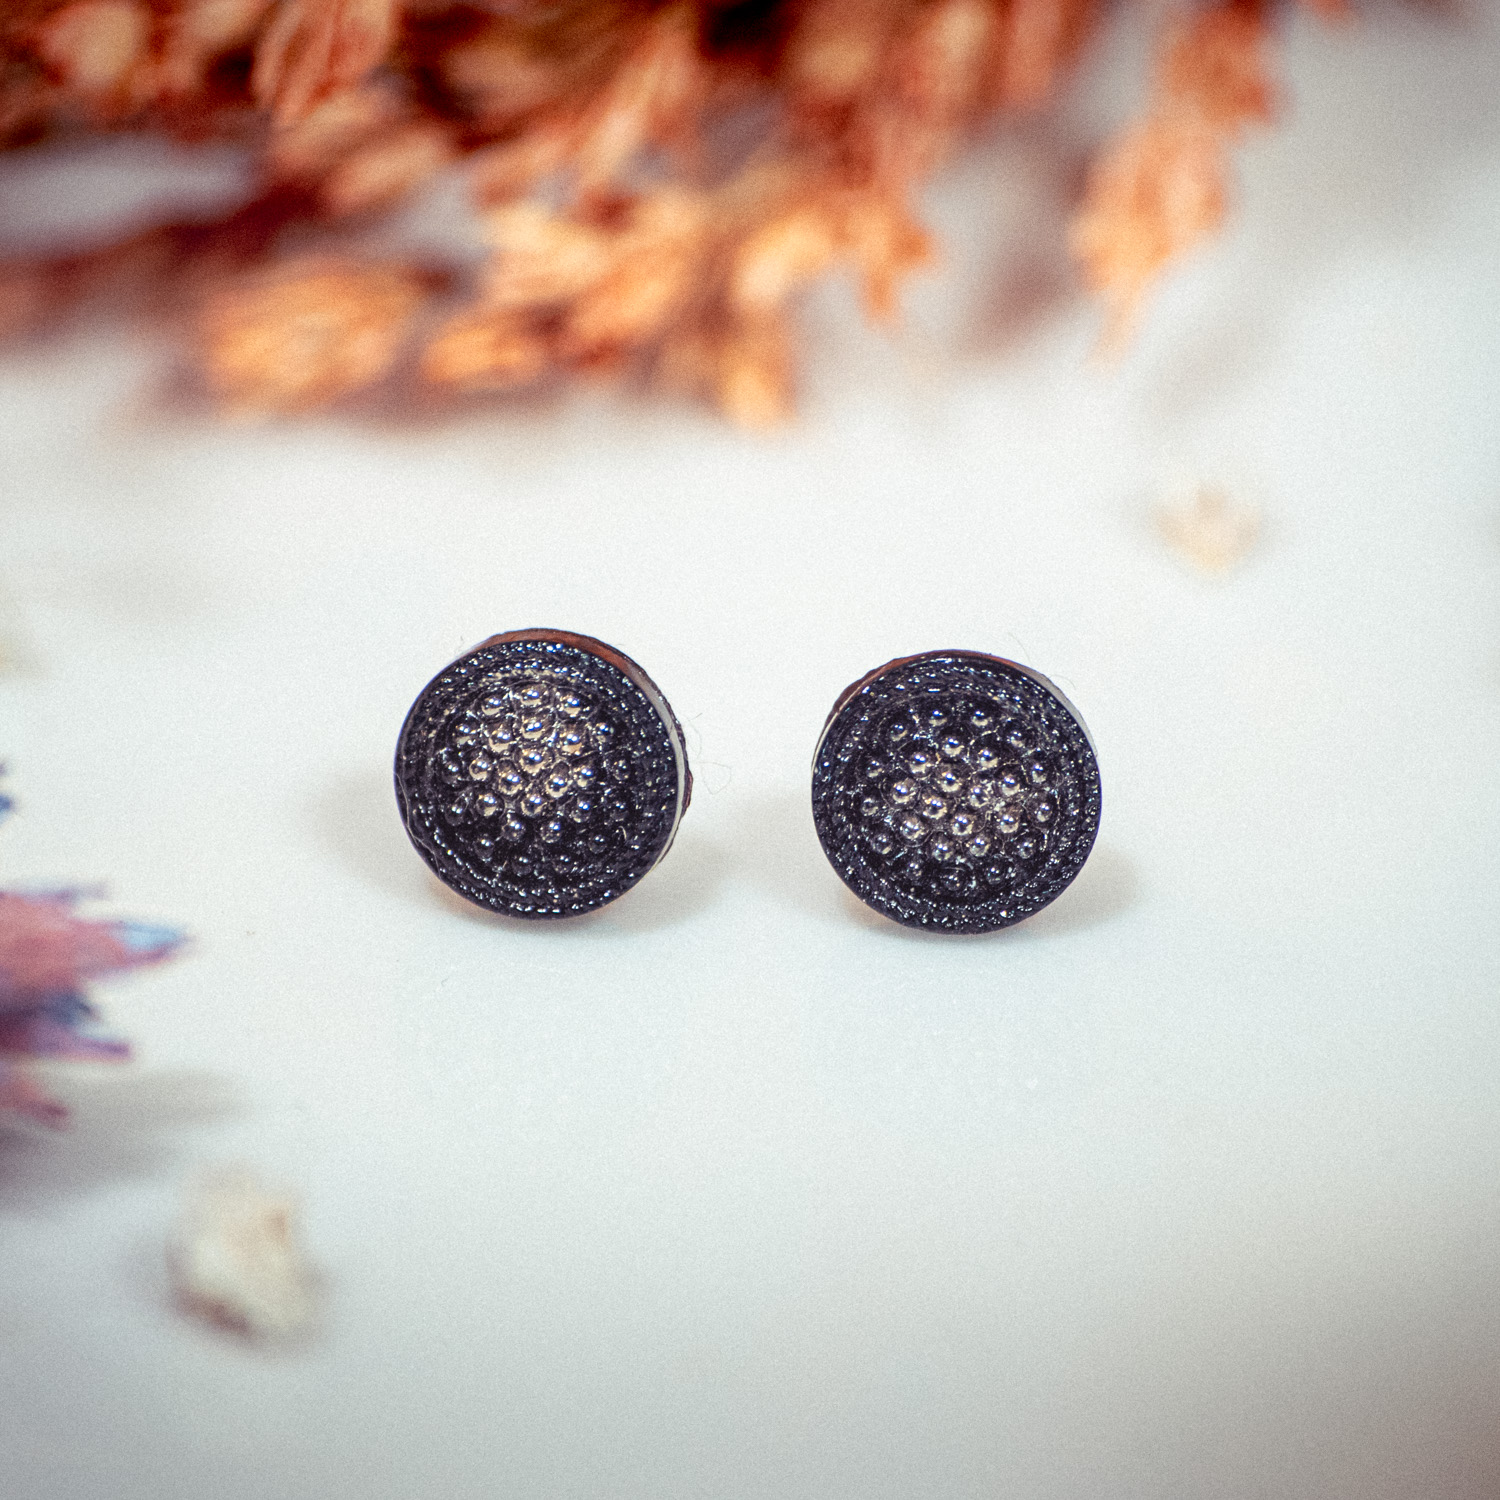 Assuna – Boucles d’oreilles puces mini Perette gris et noir – bouton ancien 1940 – clous d’oreilles acier inoxydable